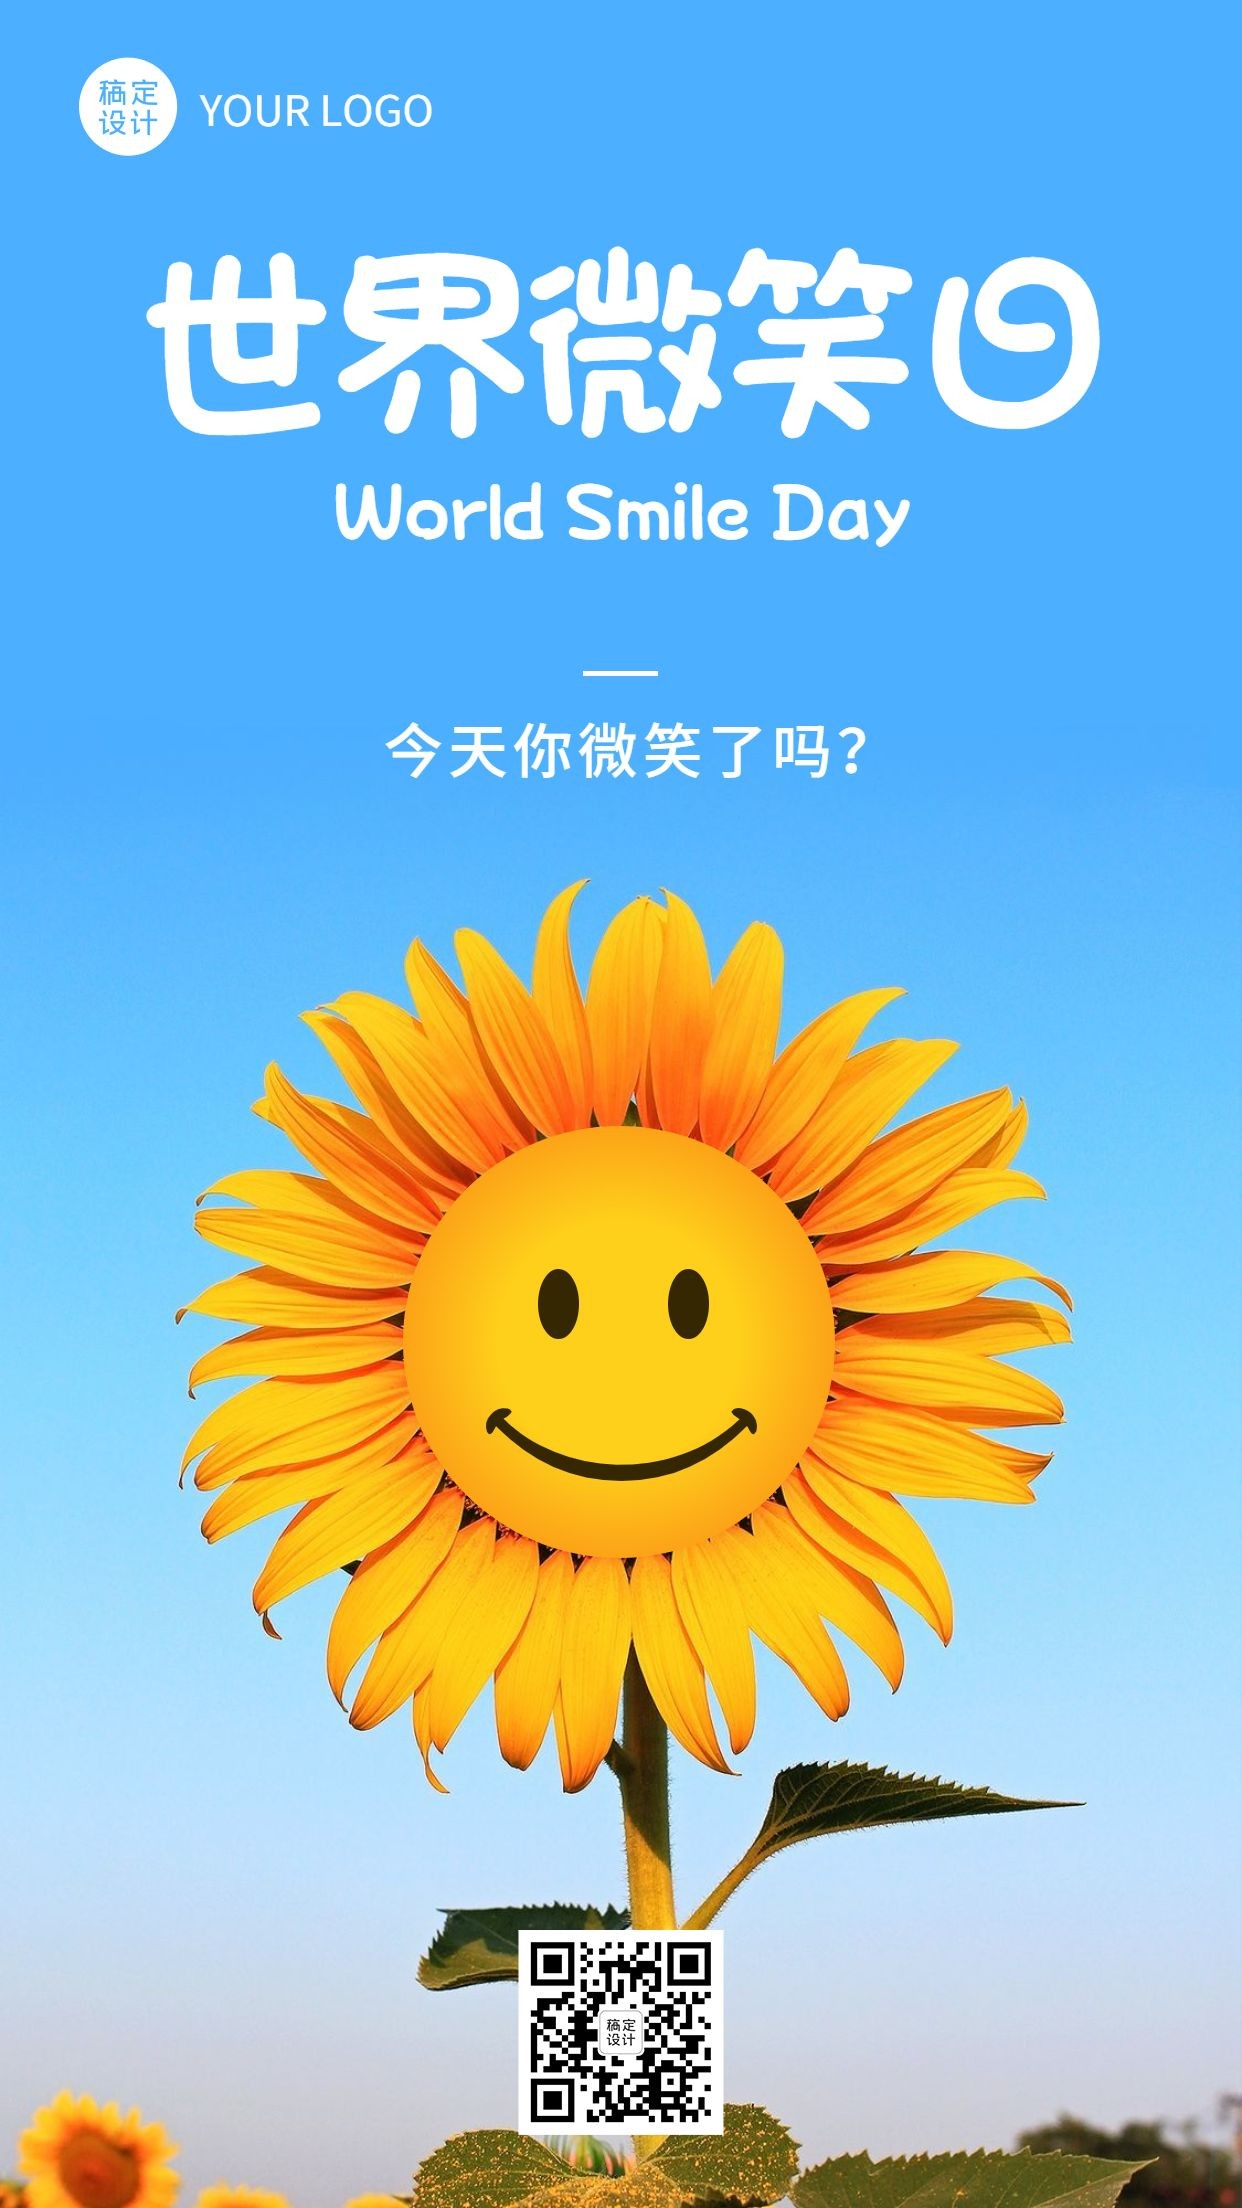 世界微笑日创意笑脸向日葵手机海报预览效果